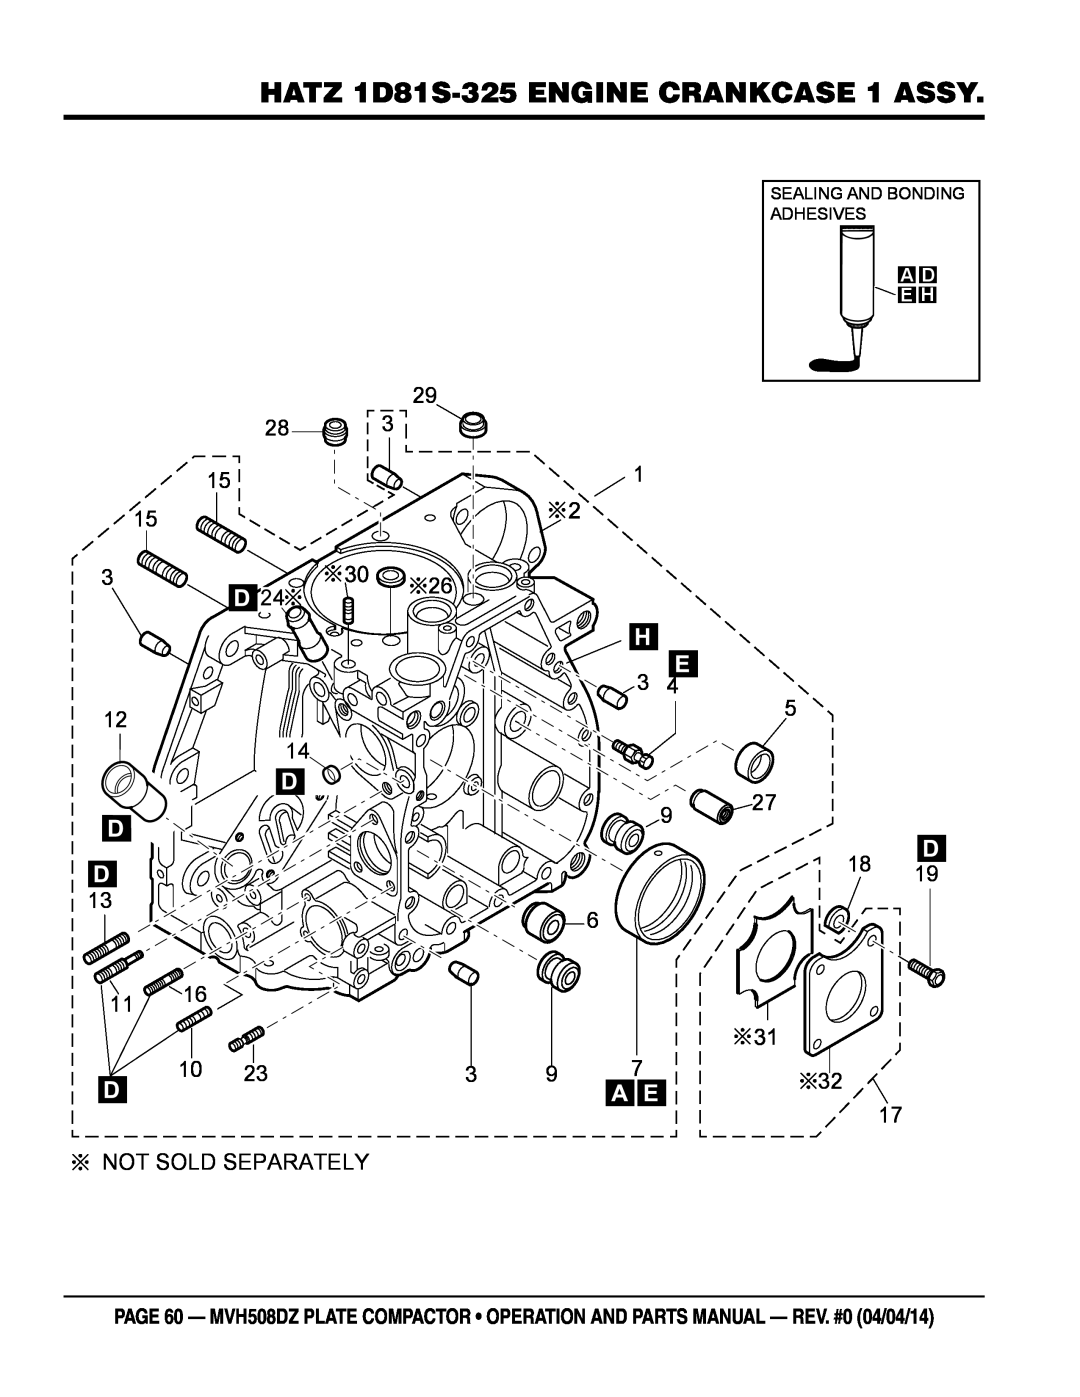 Multiquip HATZ1D81S-325 manual HATZ 1D81S-325 ENGINE CRANKCASE 1 ASSY, Not Sold Separately, A D E H 